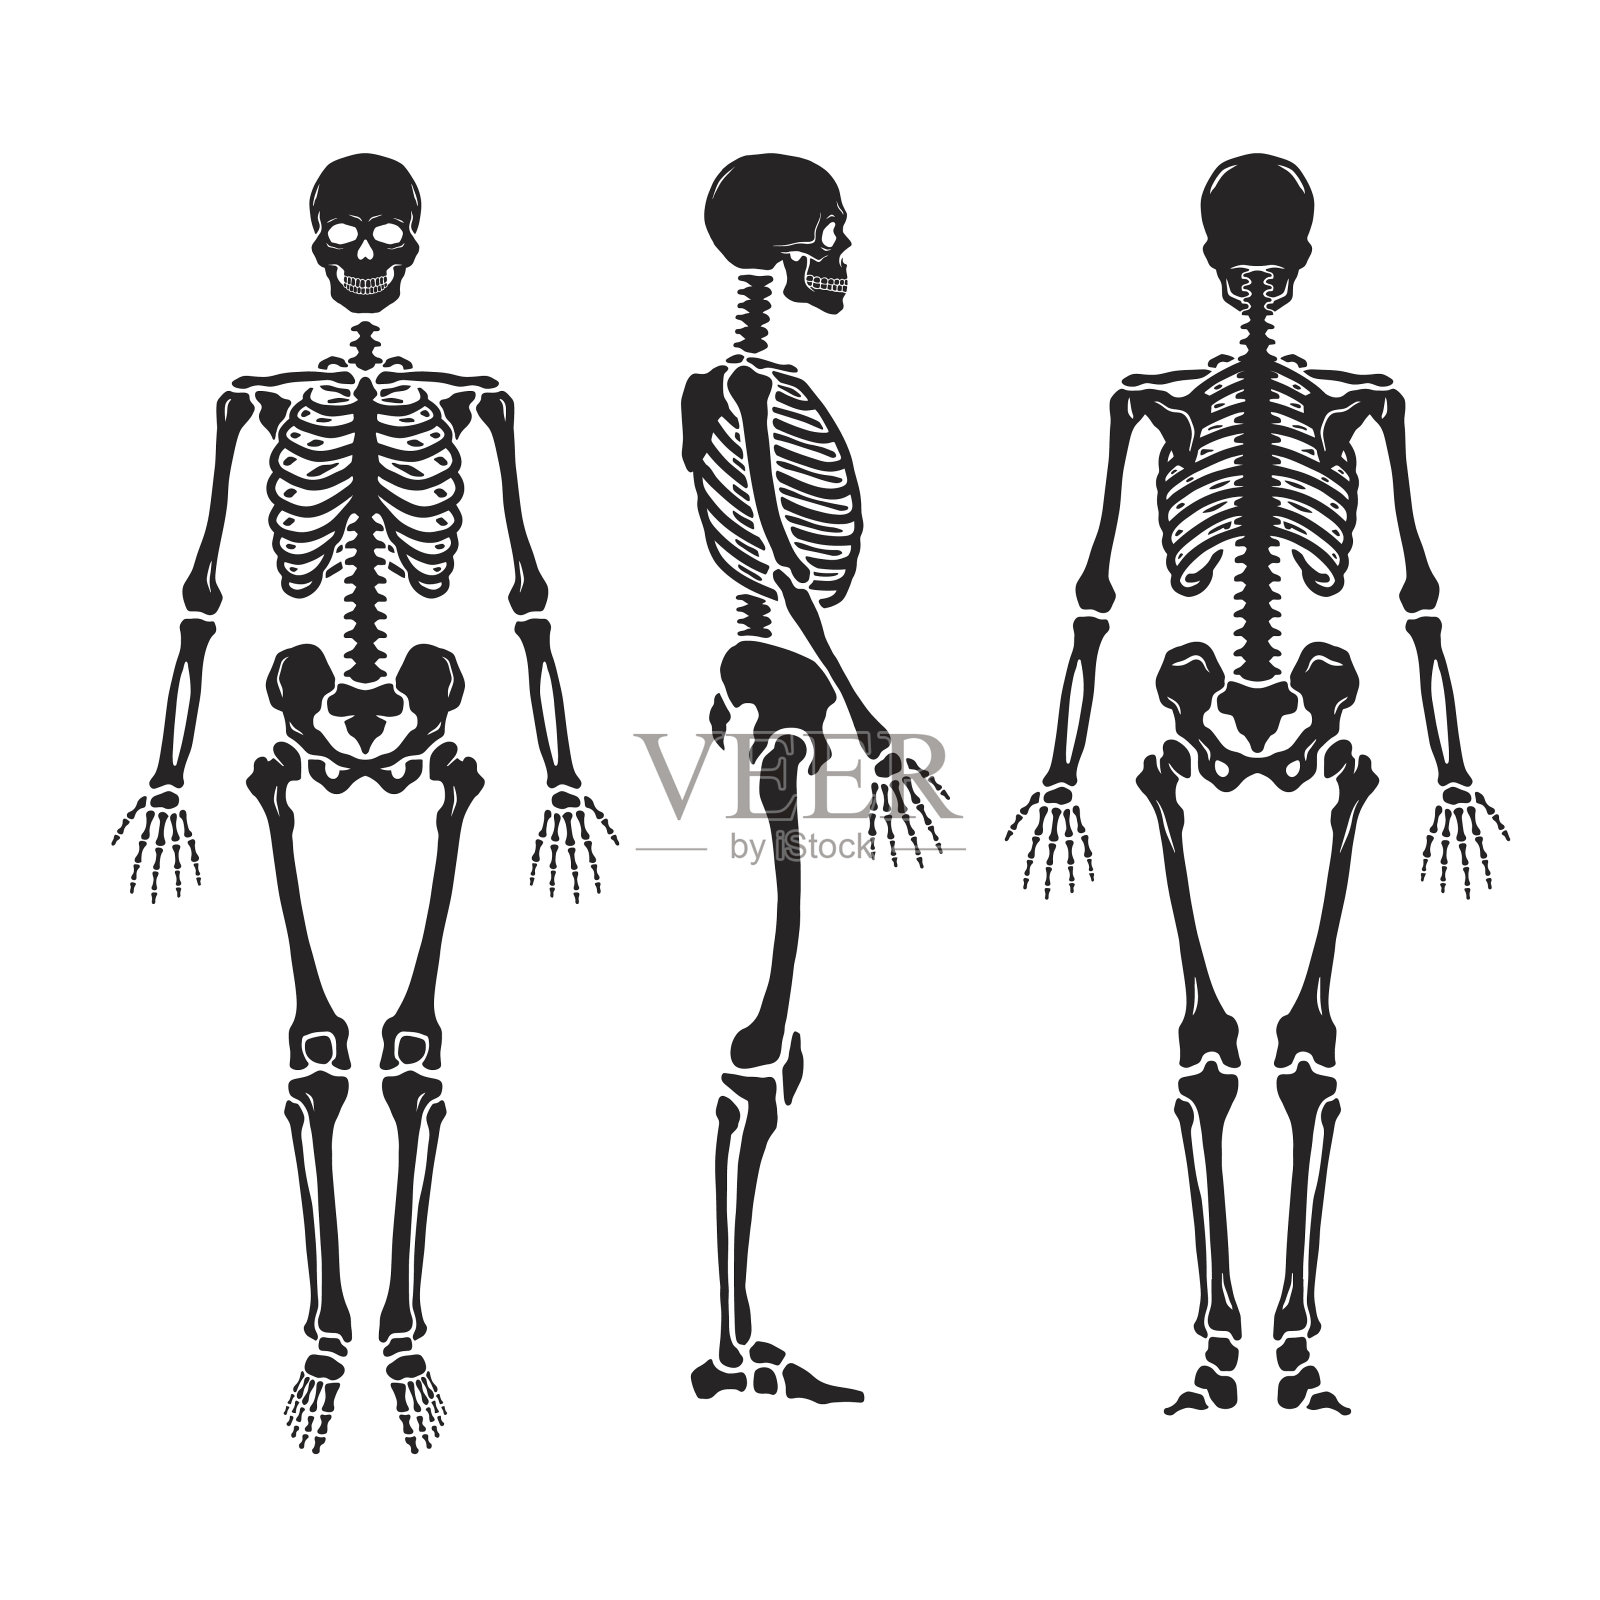 解剖学上的人体骨骼，有三种姿势。插画图片素材